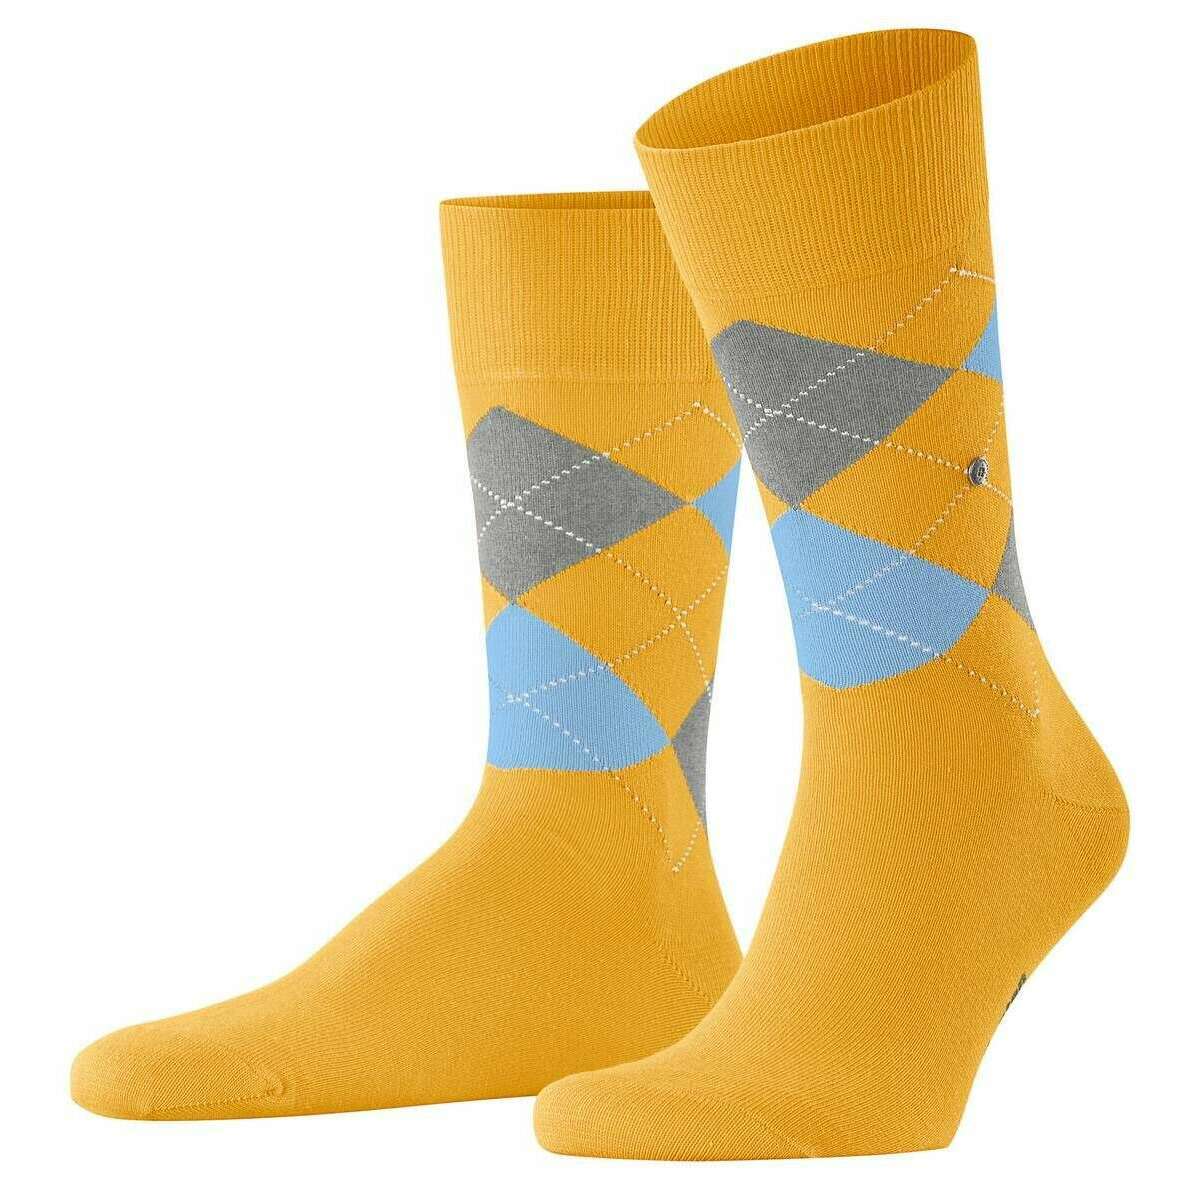 Burlington King Socks - Solar Yellow